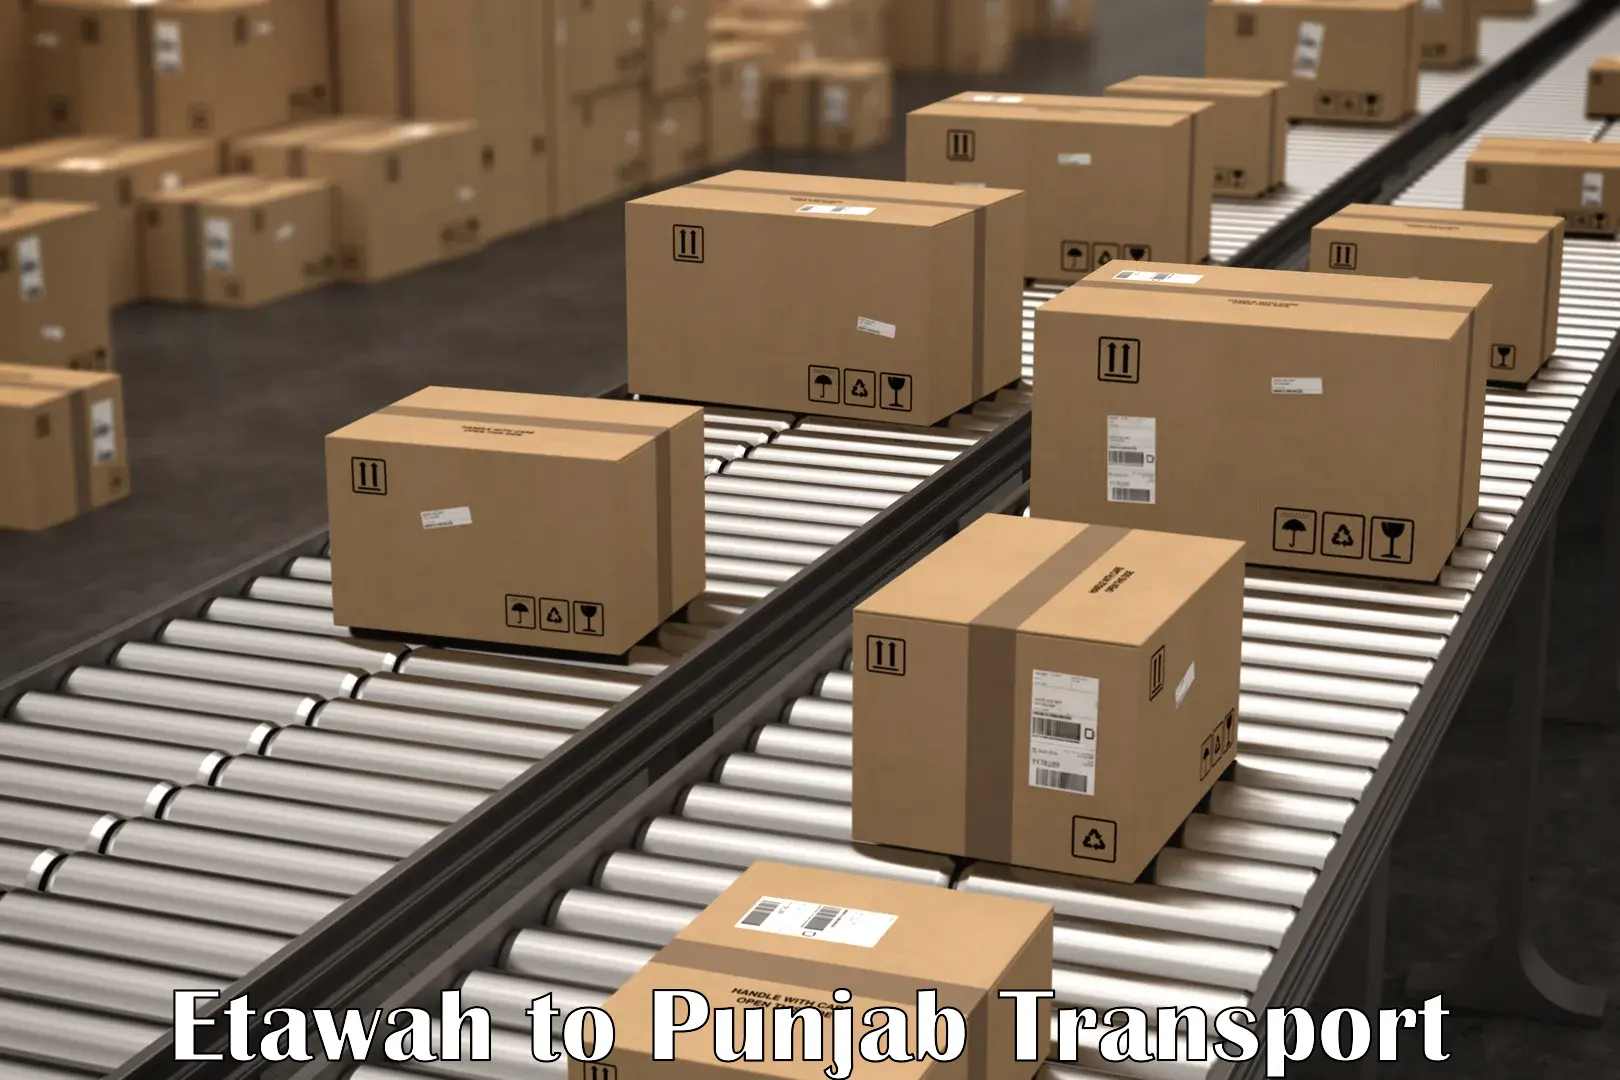 Land transport services in Etawah to Abohar